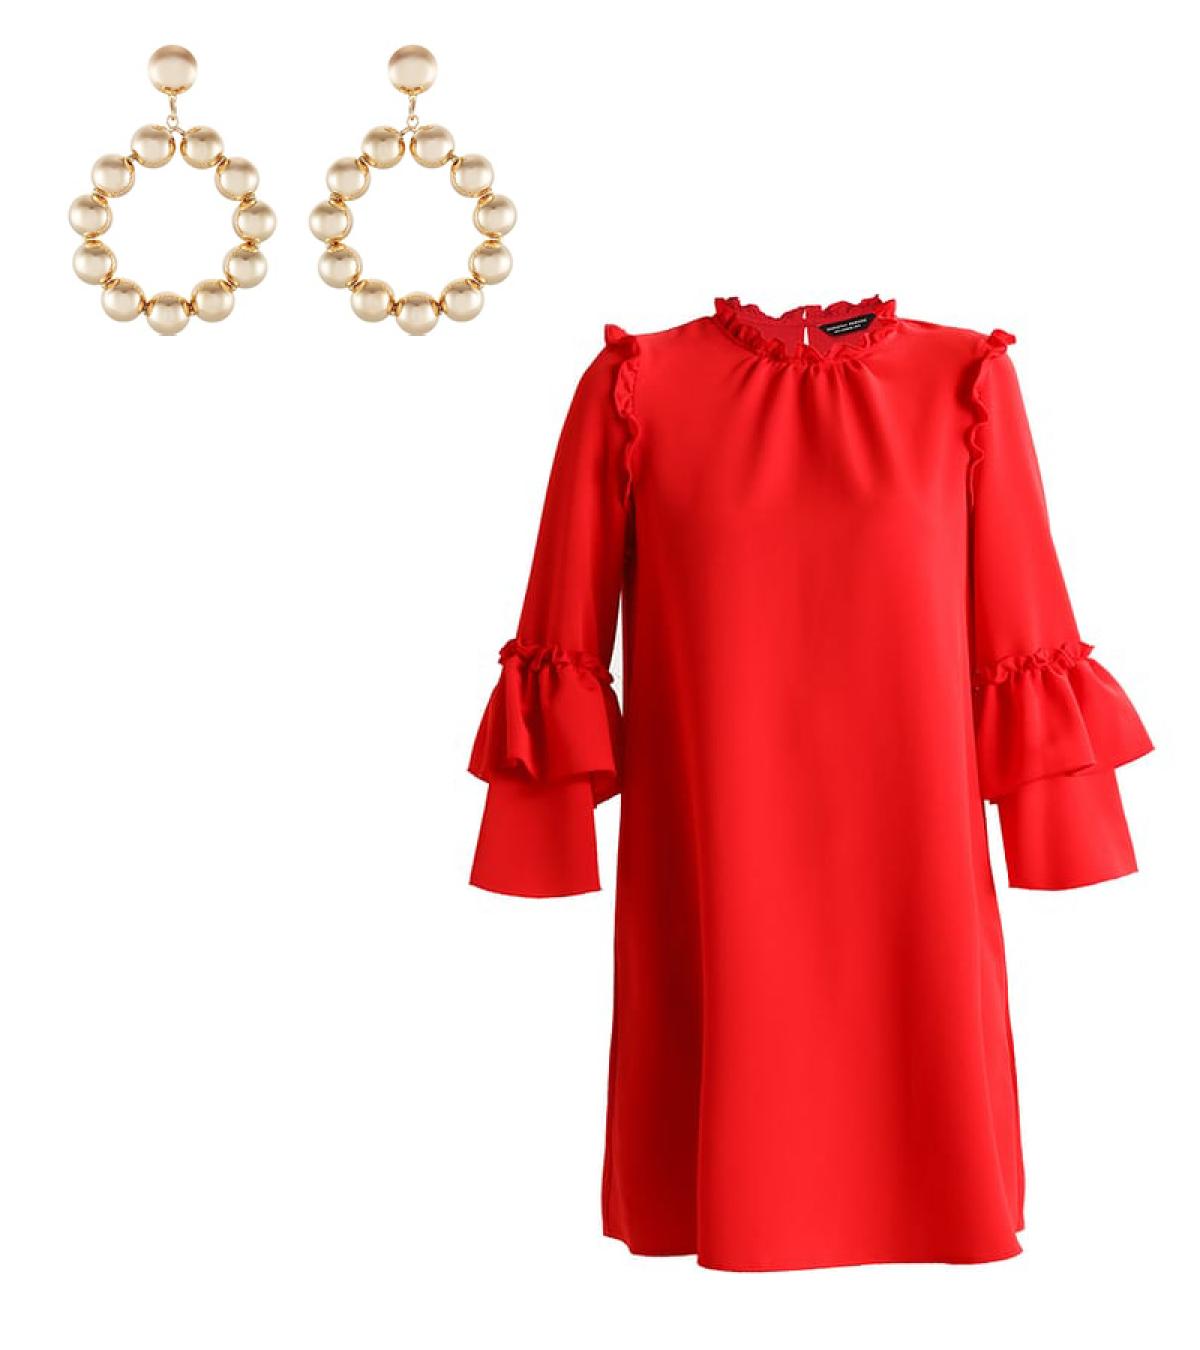 boter sponsor condensor 8 stijlvolle manieren om je rode jurk te combineren